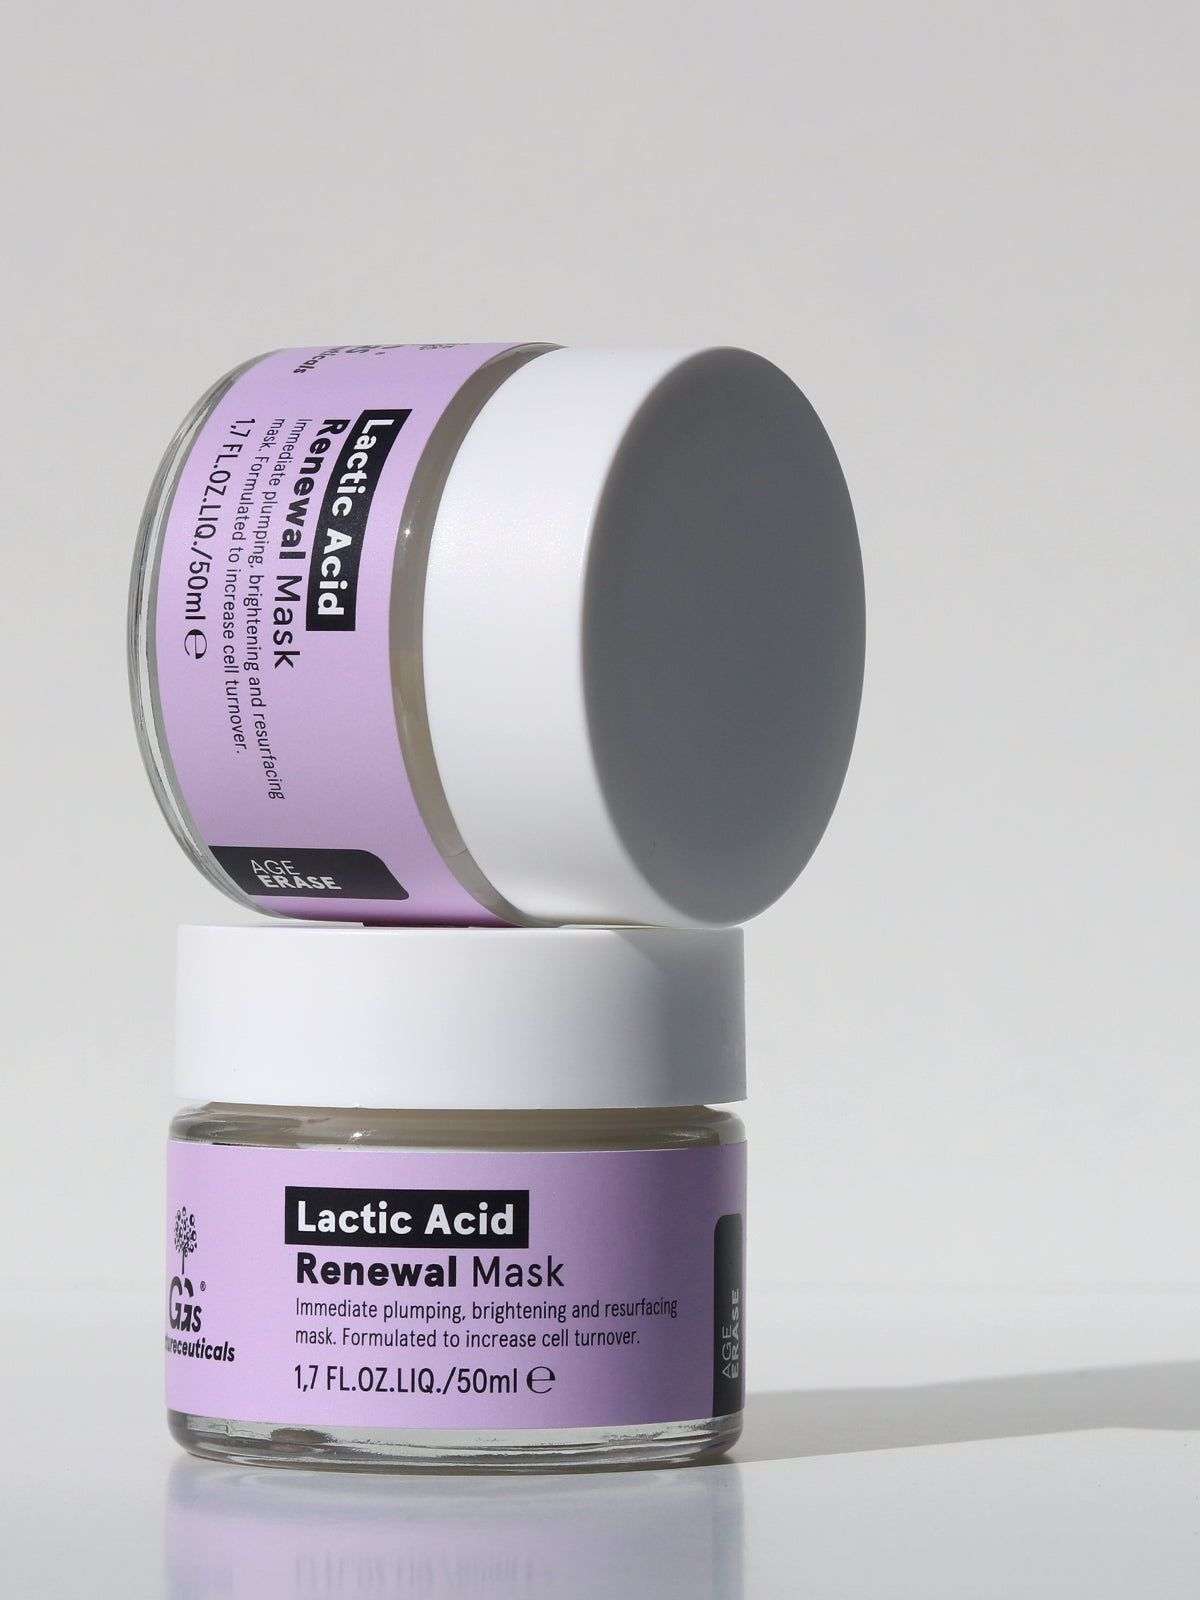 Lactic Acid Renewal Mask – Aufpolsternde und restrukturierende Milchsäure Maske | GGs Natureceuticals